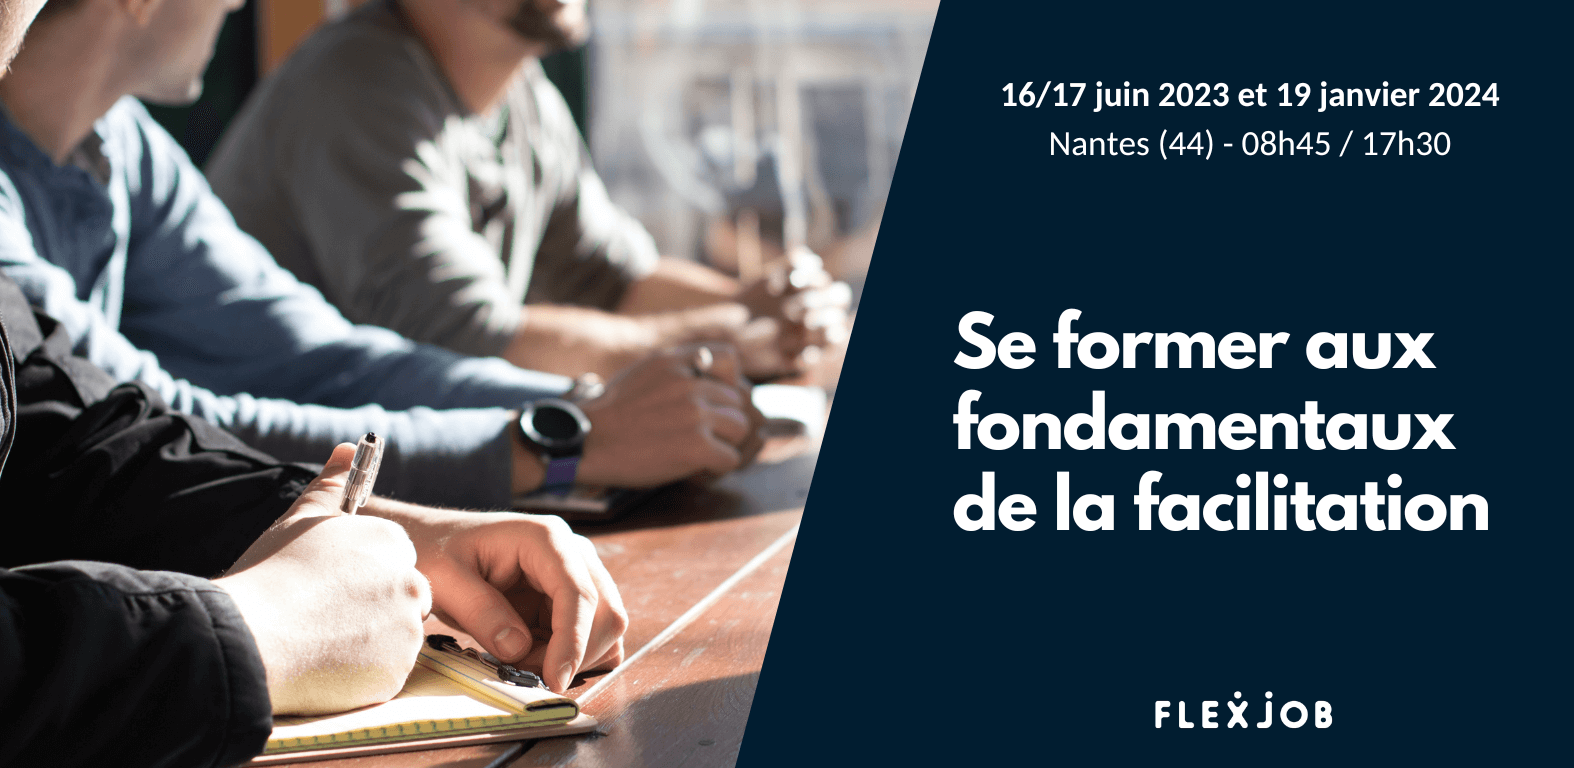 Se former aux fondamentaux de la facilitation avec FlexJob à Nantes !